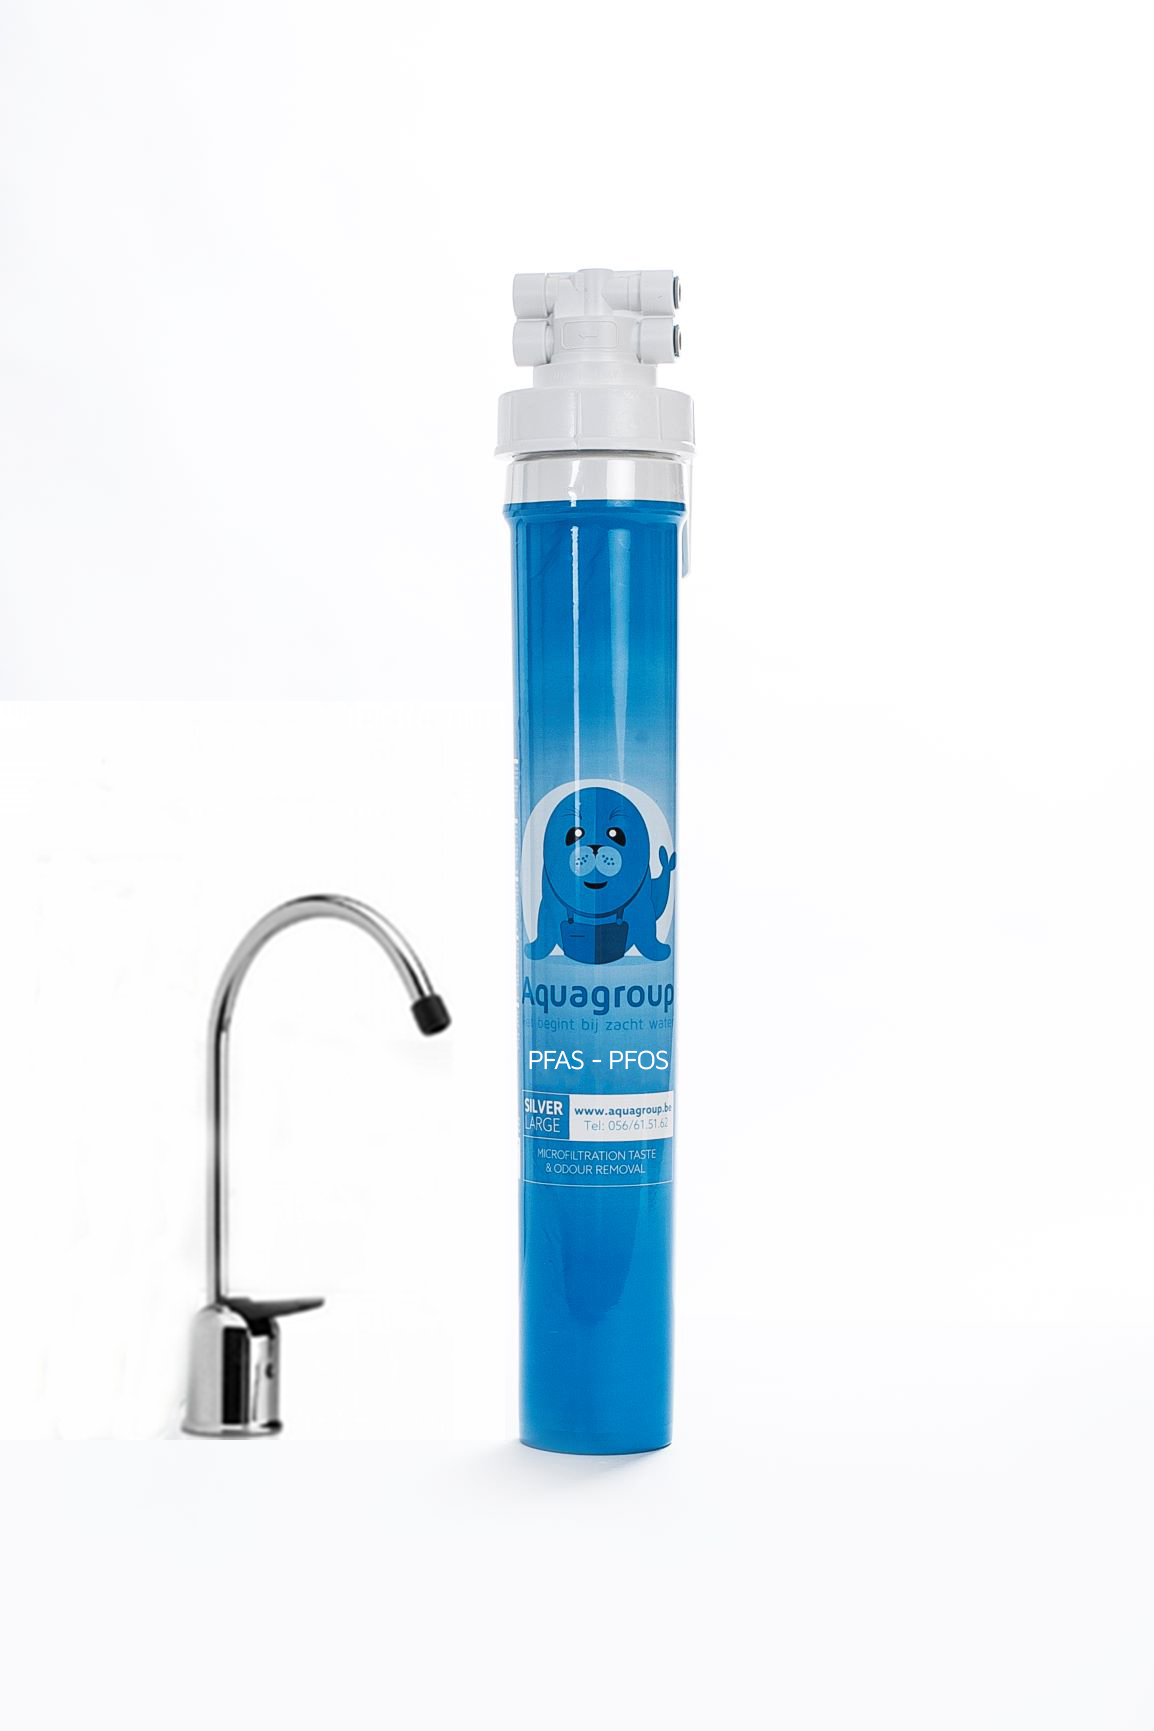 SFproducts filtre à eau du robinet - eau potable propre - eau anti